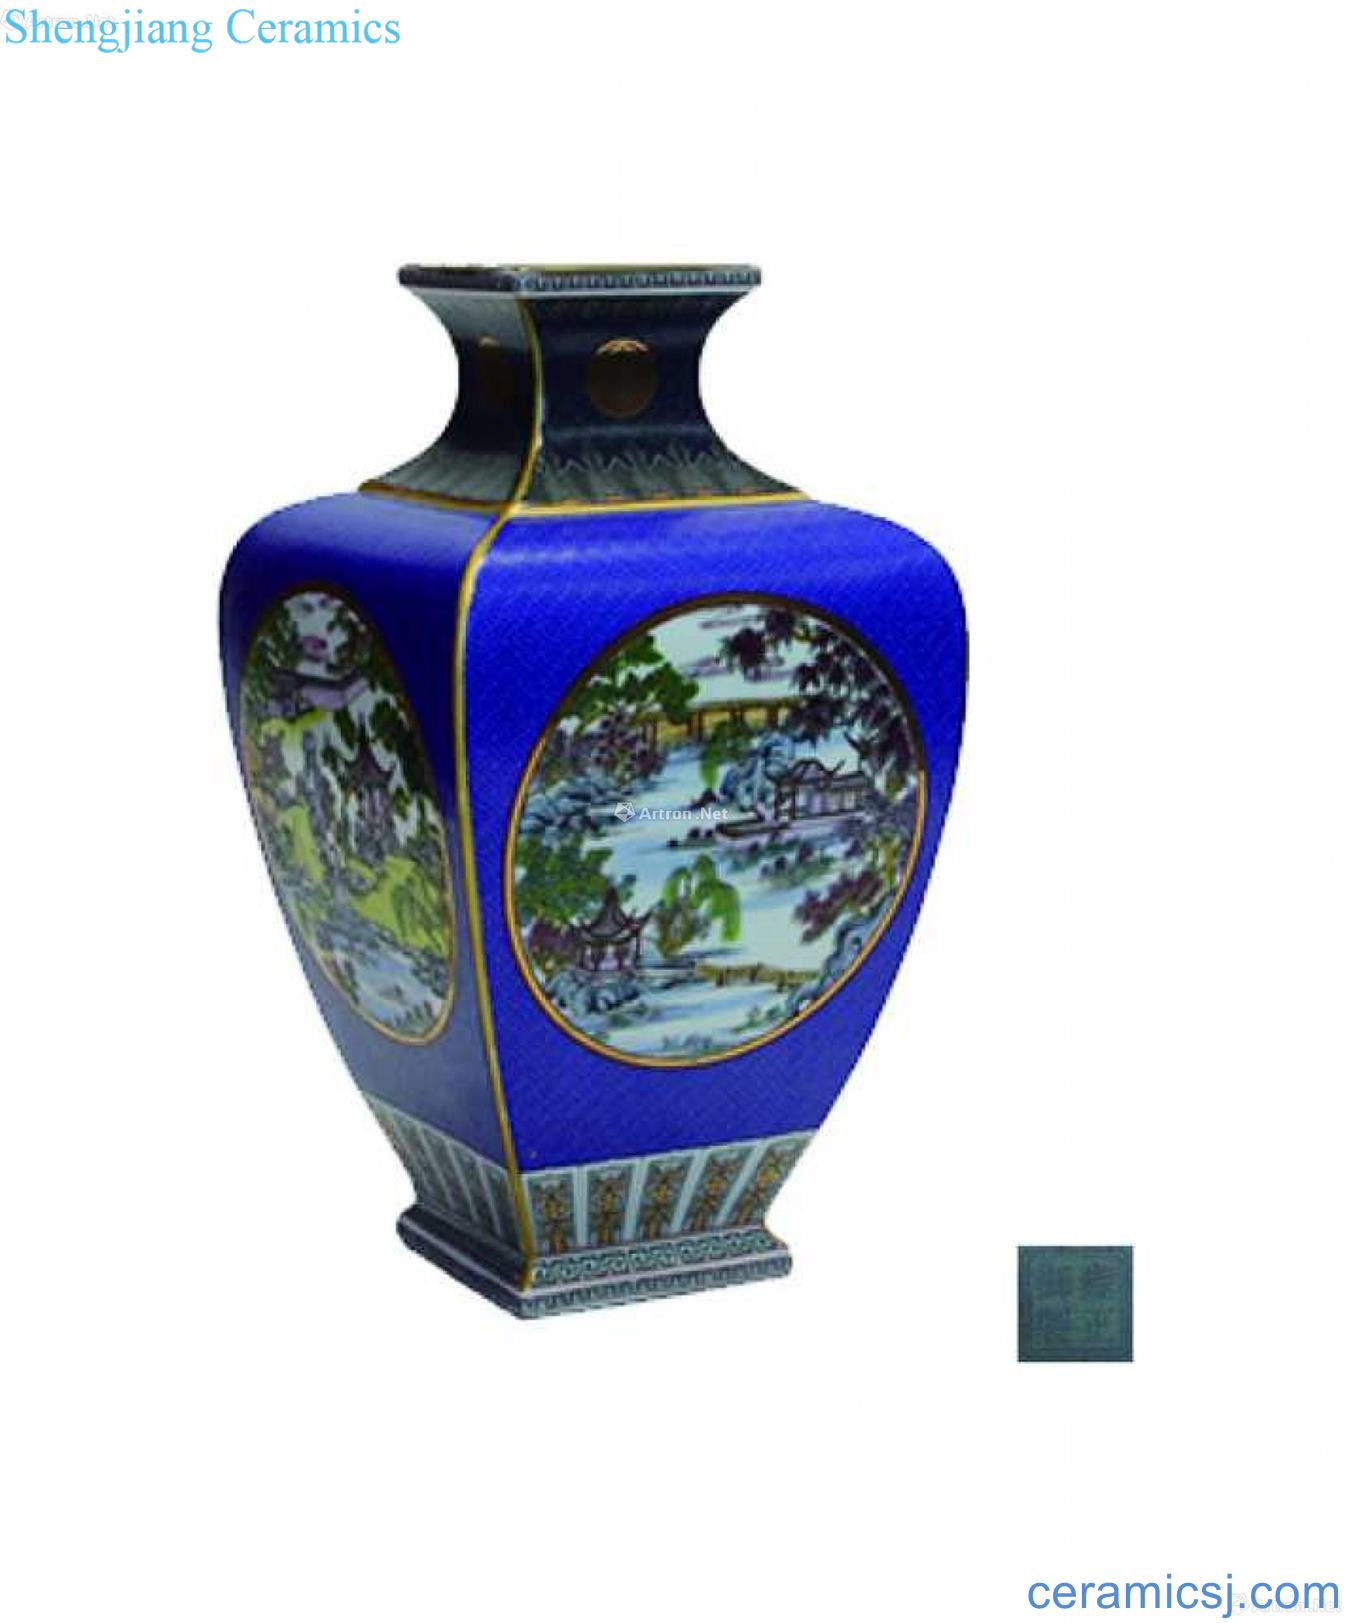 Four edges colored enamel medallion landscape decorative bottle